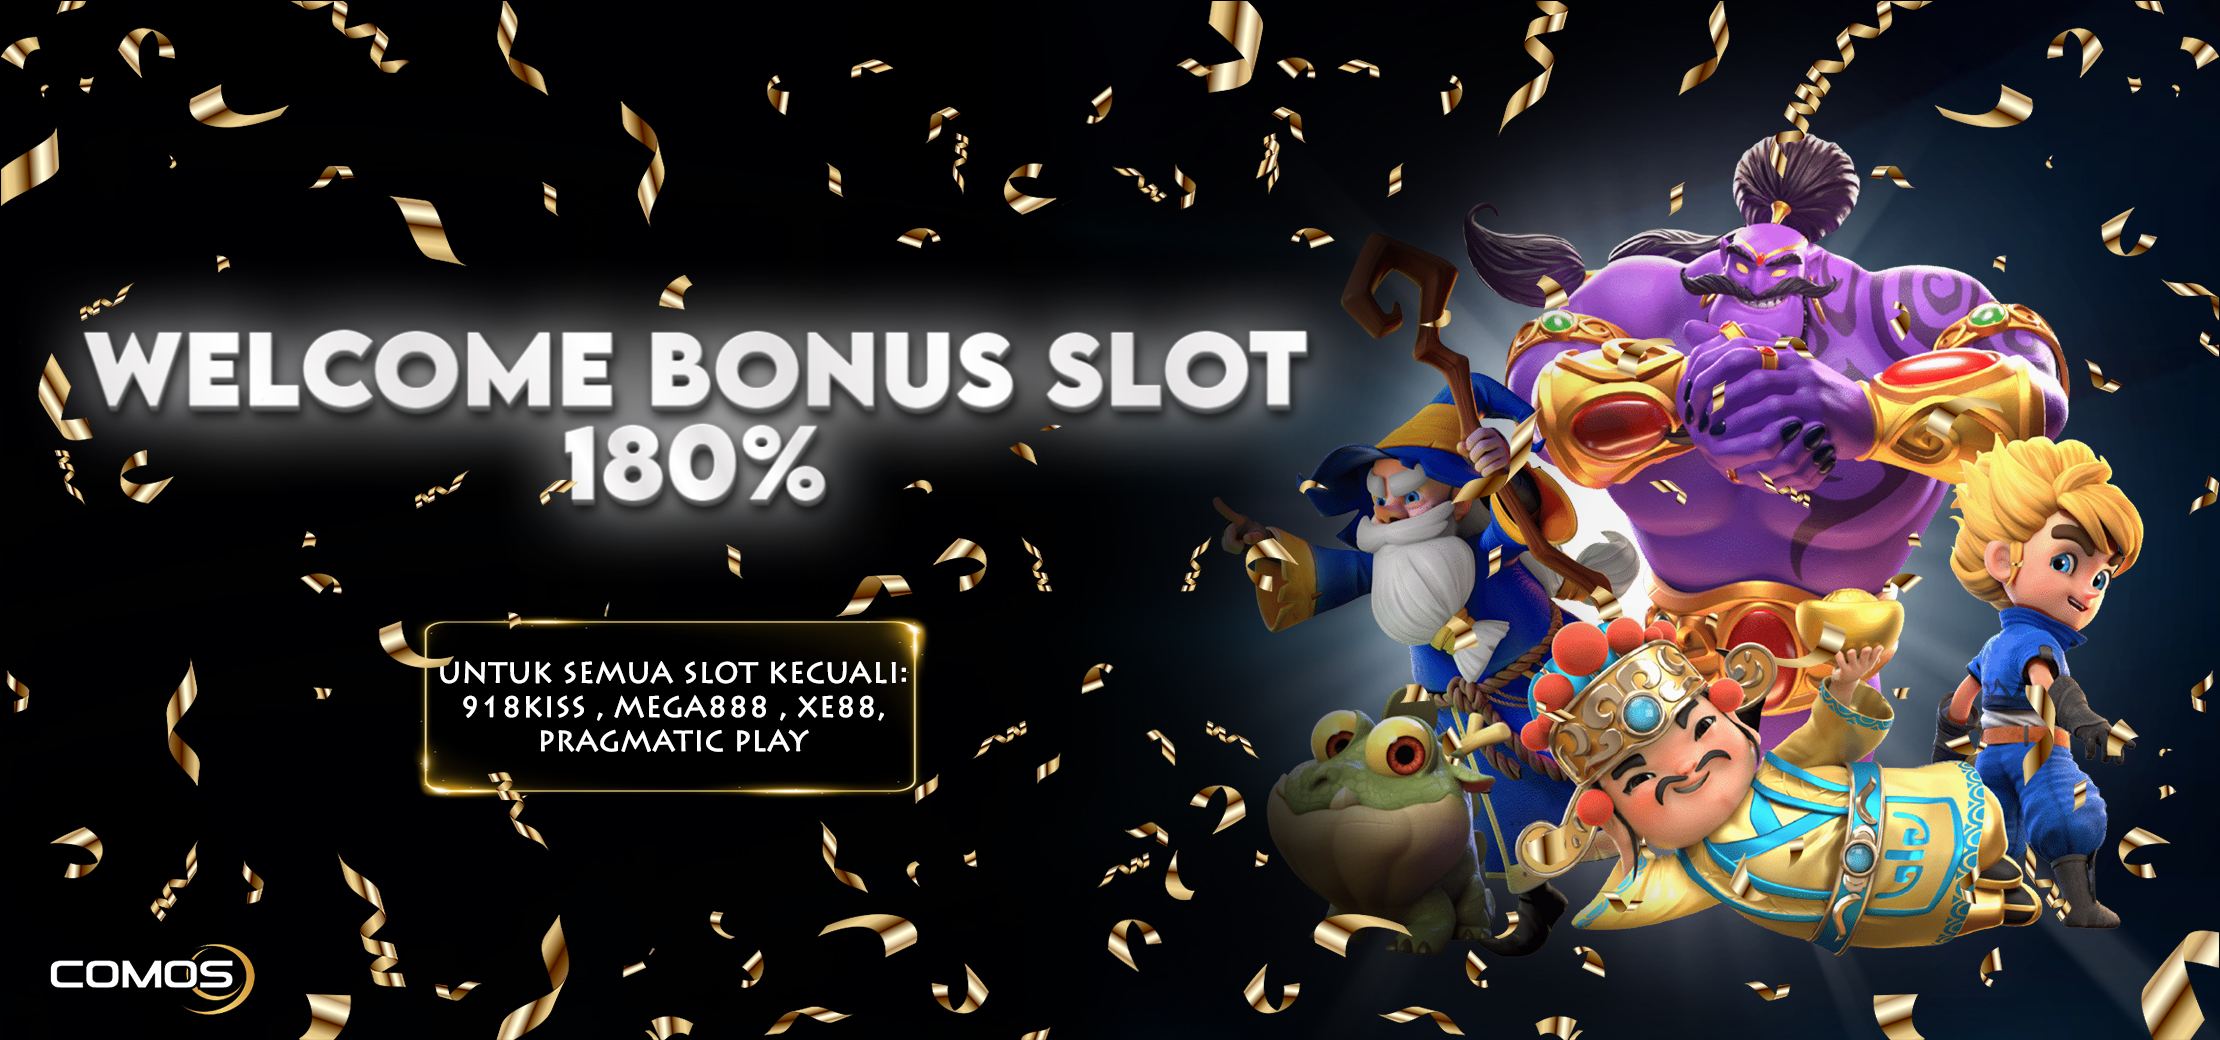 Welcome Bonus Slot 180% ( For All Slot Except : 918kiss , Mega888 , Xe88 , Pragmatic Play )